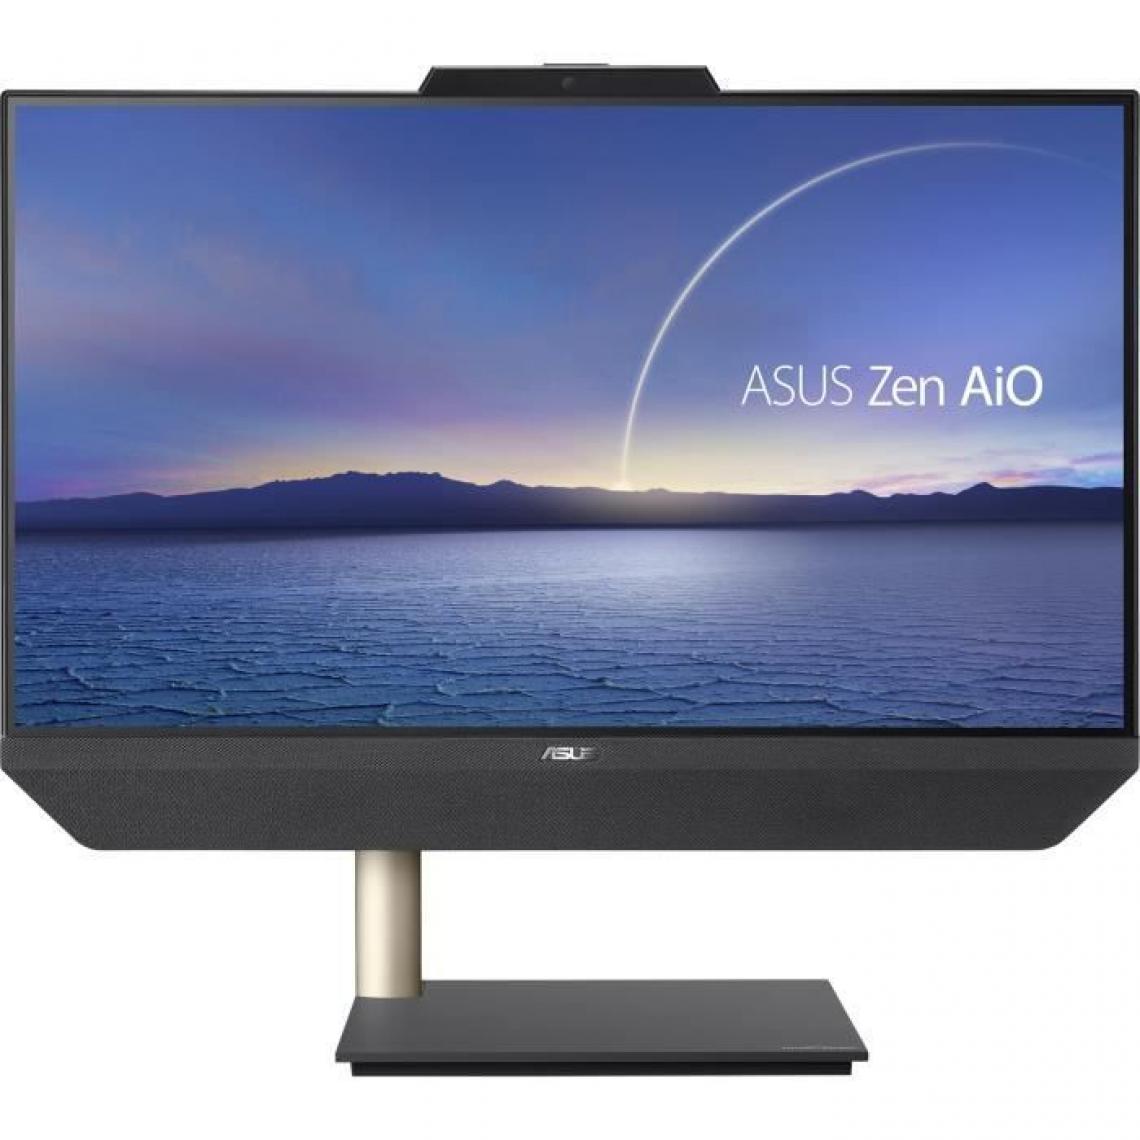 Asus - PC Tout-en-un ASUS Zen AIO A5200WFAK-BA108T - 21,5 FHD - Intel Core i3-10110U - RAM 8Go - SSD 256Go - Windows 10 - Clavier + Souris - PC Fixe